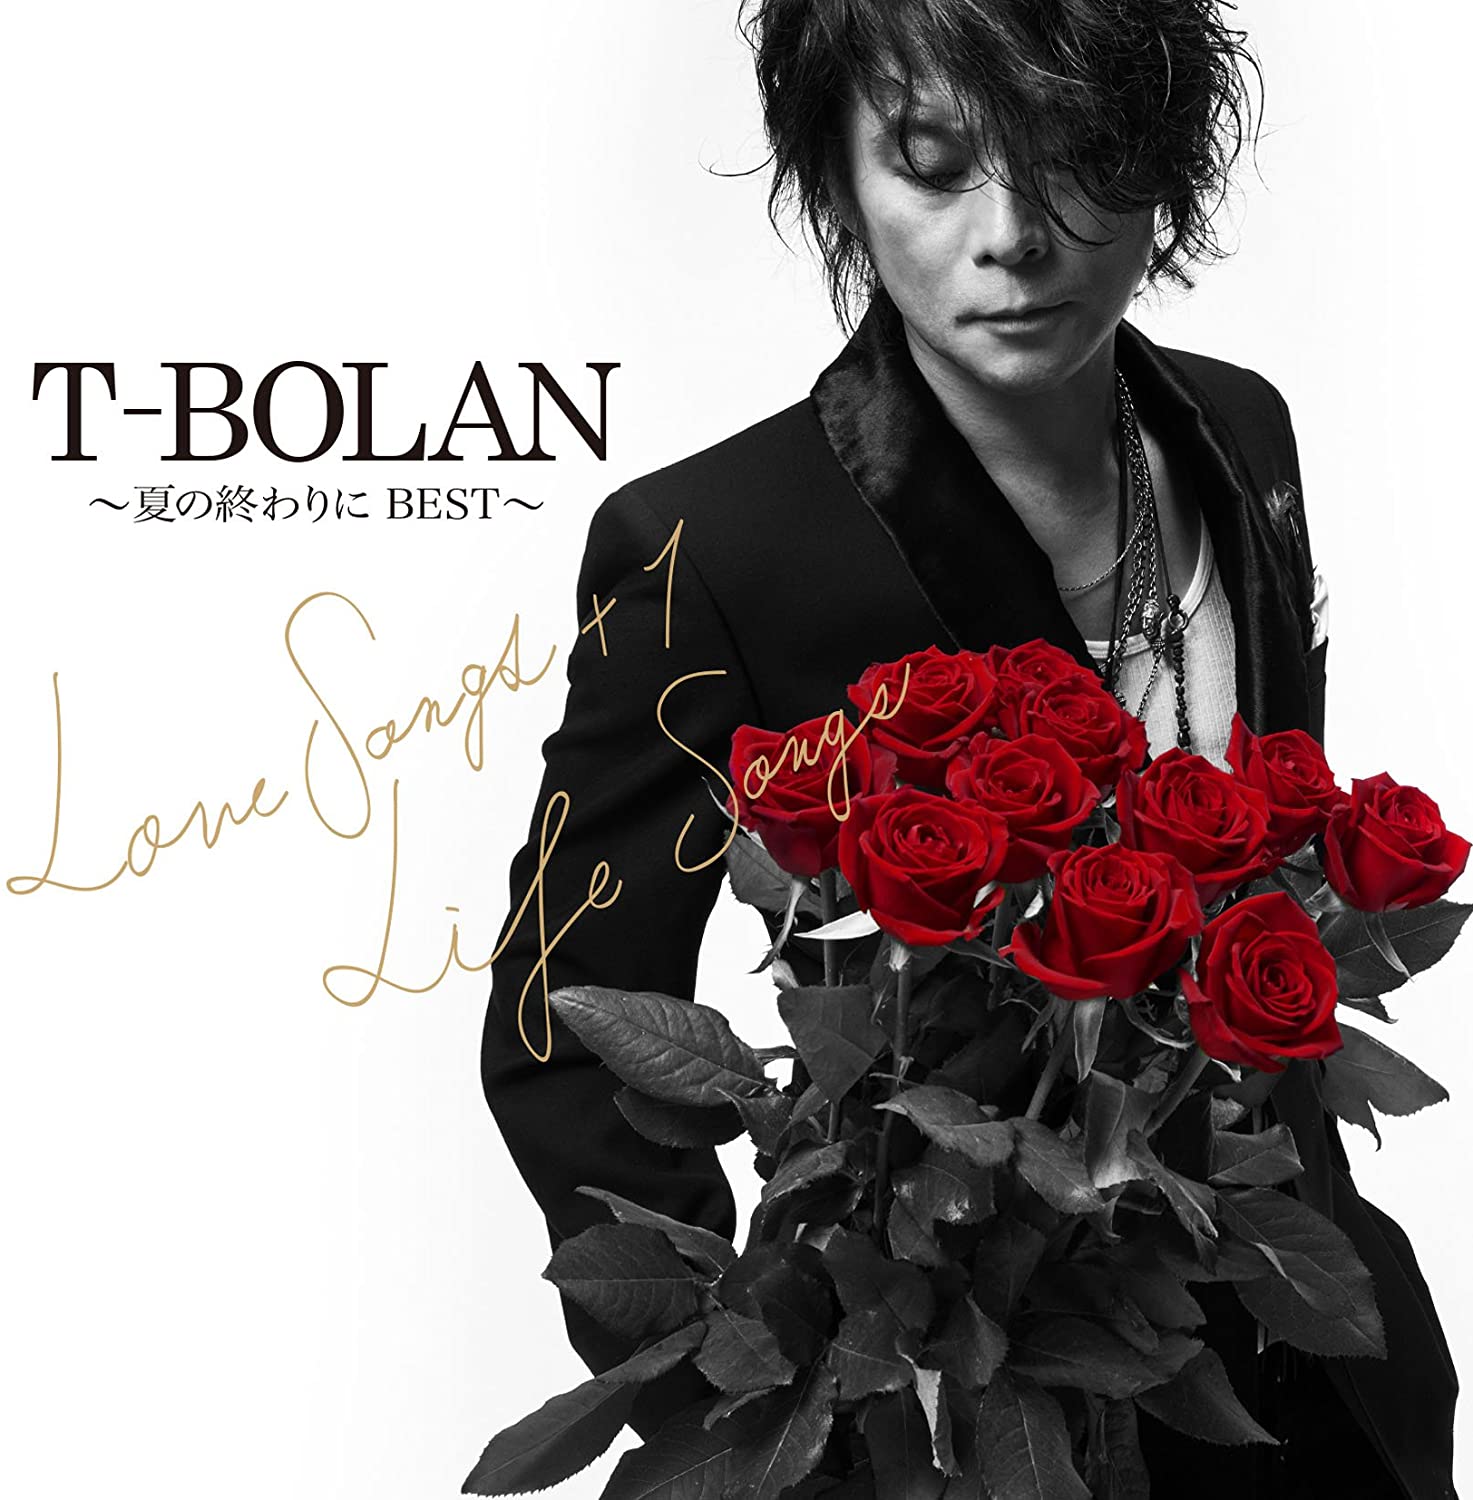 ベストアルバム「T-BOLAN～夏の終わりに BEST～LOVE SONGS+1 & LIFE SONGS」をリリース